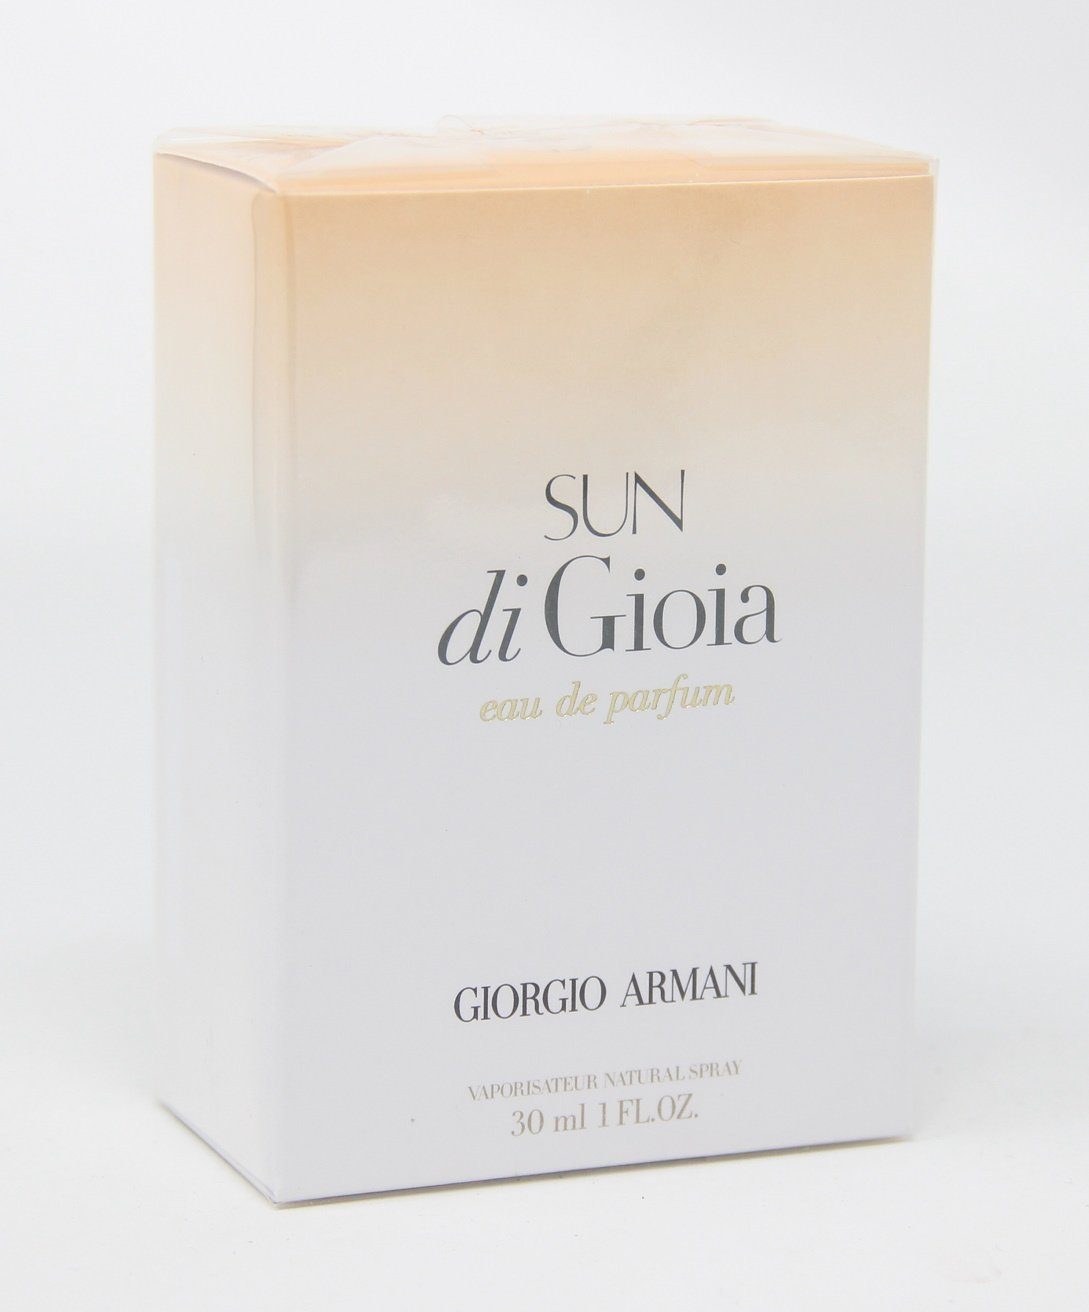 Giorgio Armani Eau de Parfum Eau di Spray 30ml Gioia de Armani Parfum Sun Giorgio